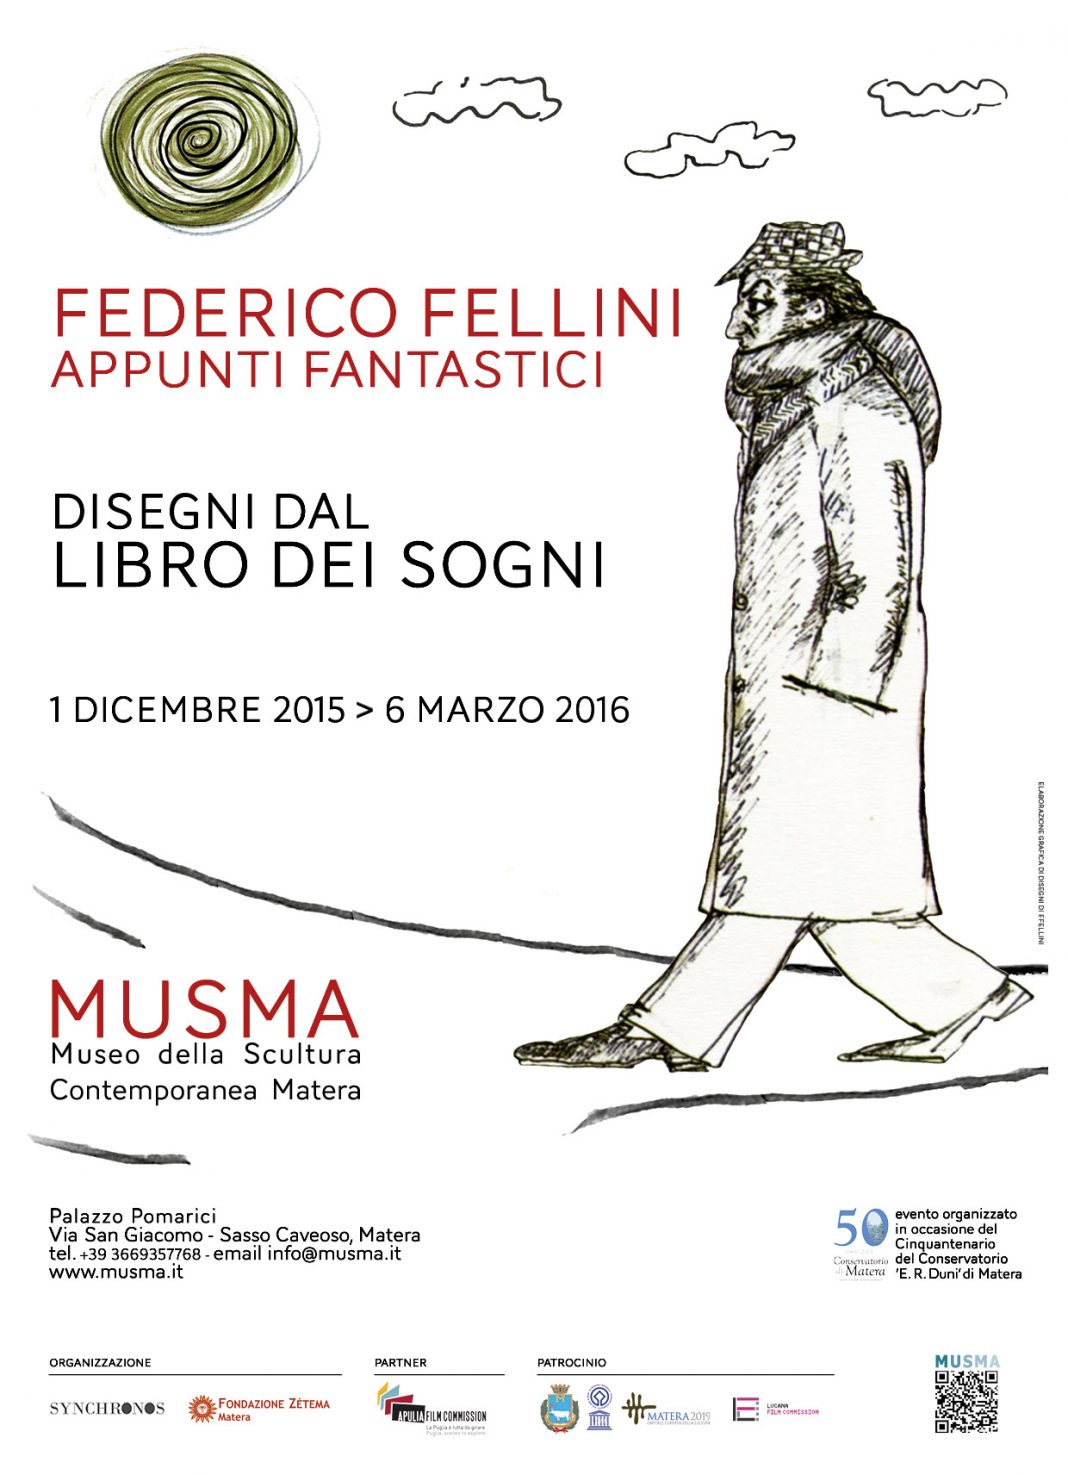 Federico Fellini – Appunti fantastici. Disegni dal Libro dei sognihttps://www.exibart.com/repository/media/eventi/2015/11/federico-fellini-8211-appunti-fantastici.-disegni-dal-libro-dei-sogni-1068x1475.jpg